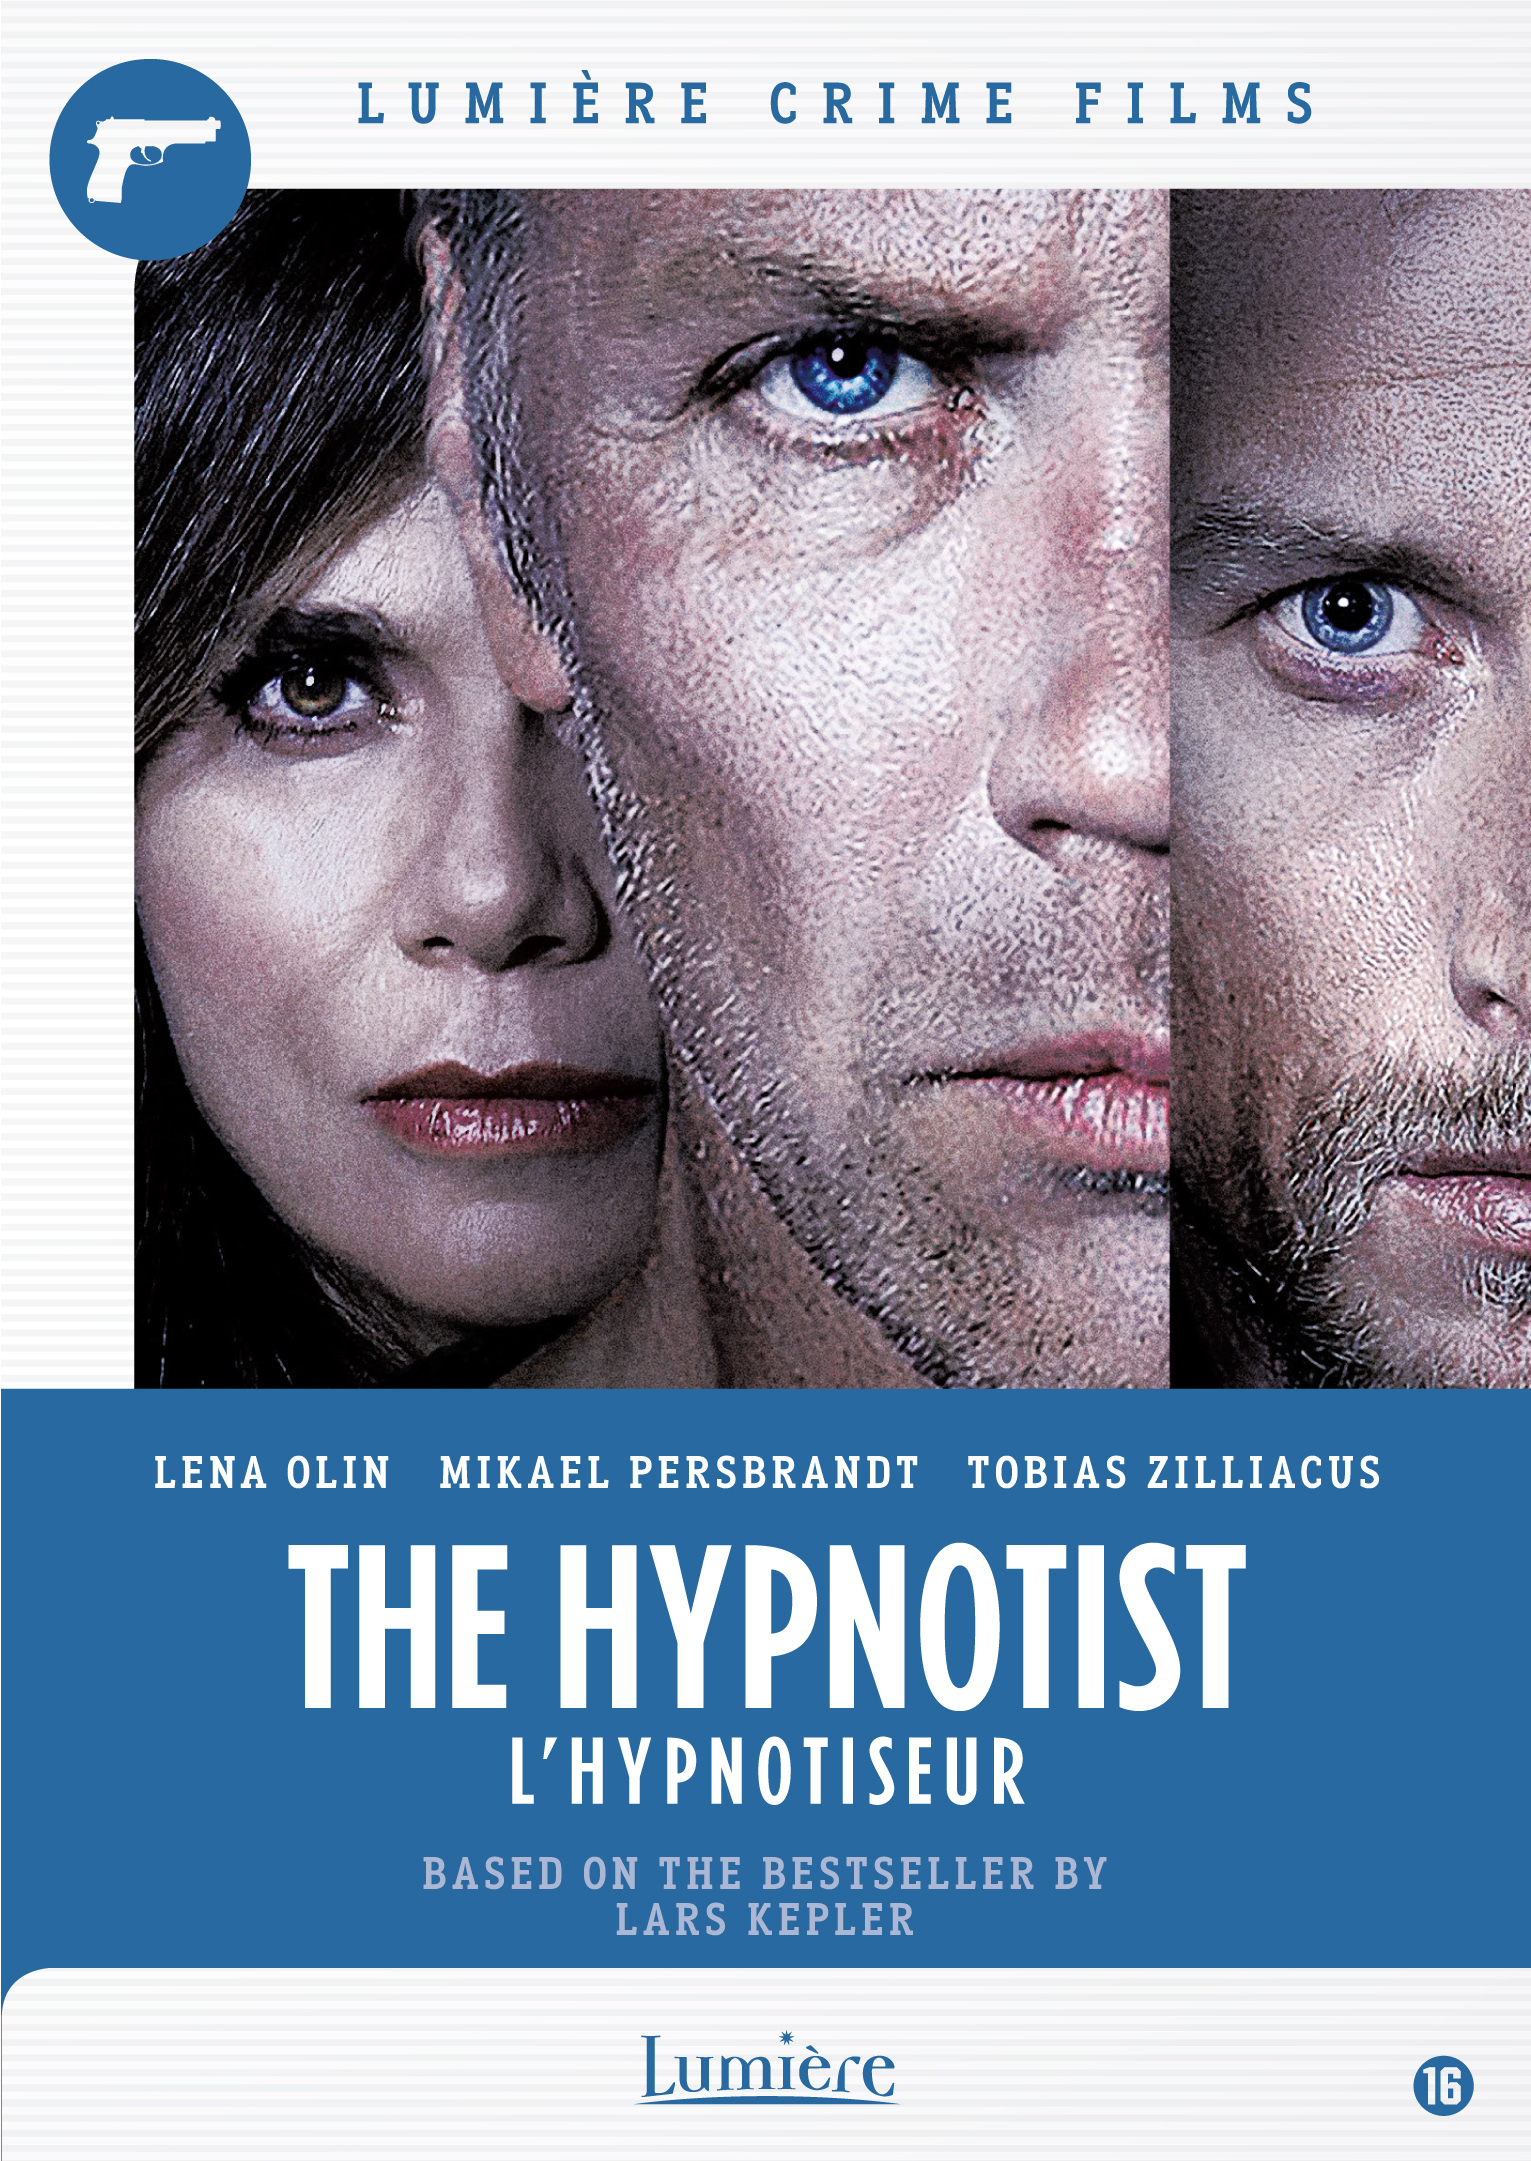 THE HYPNOTIST (L’hypnotiseur)